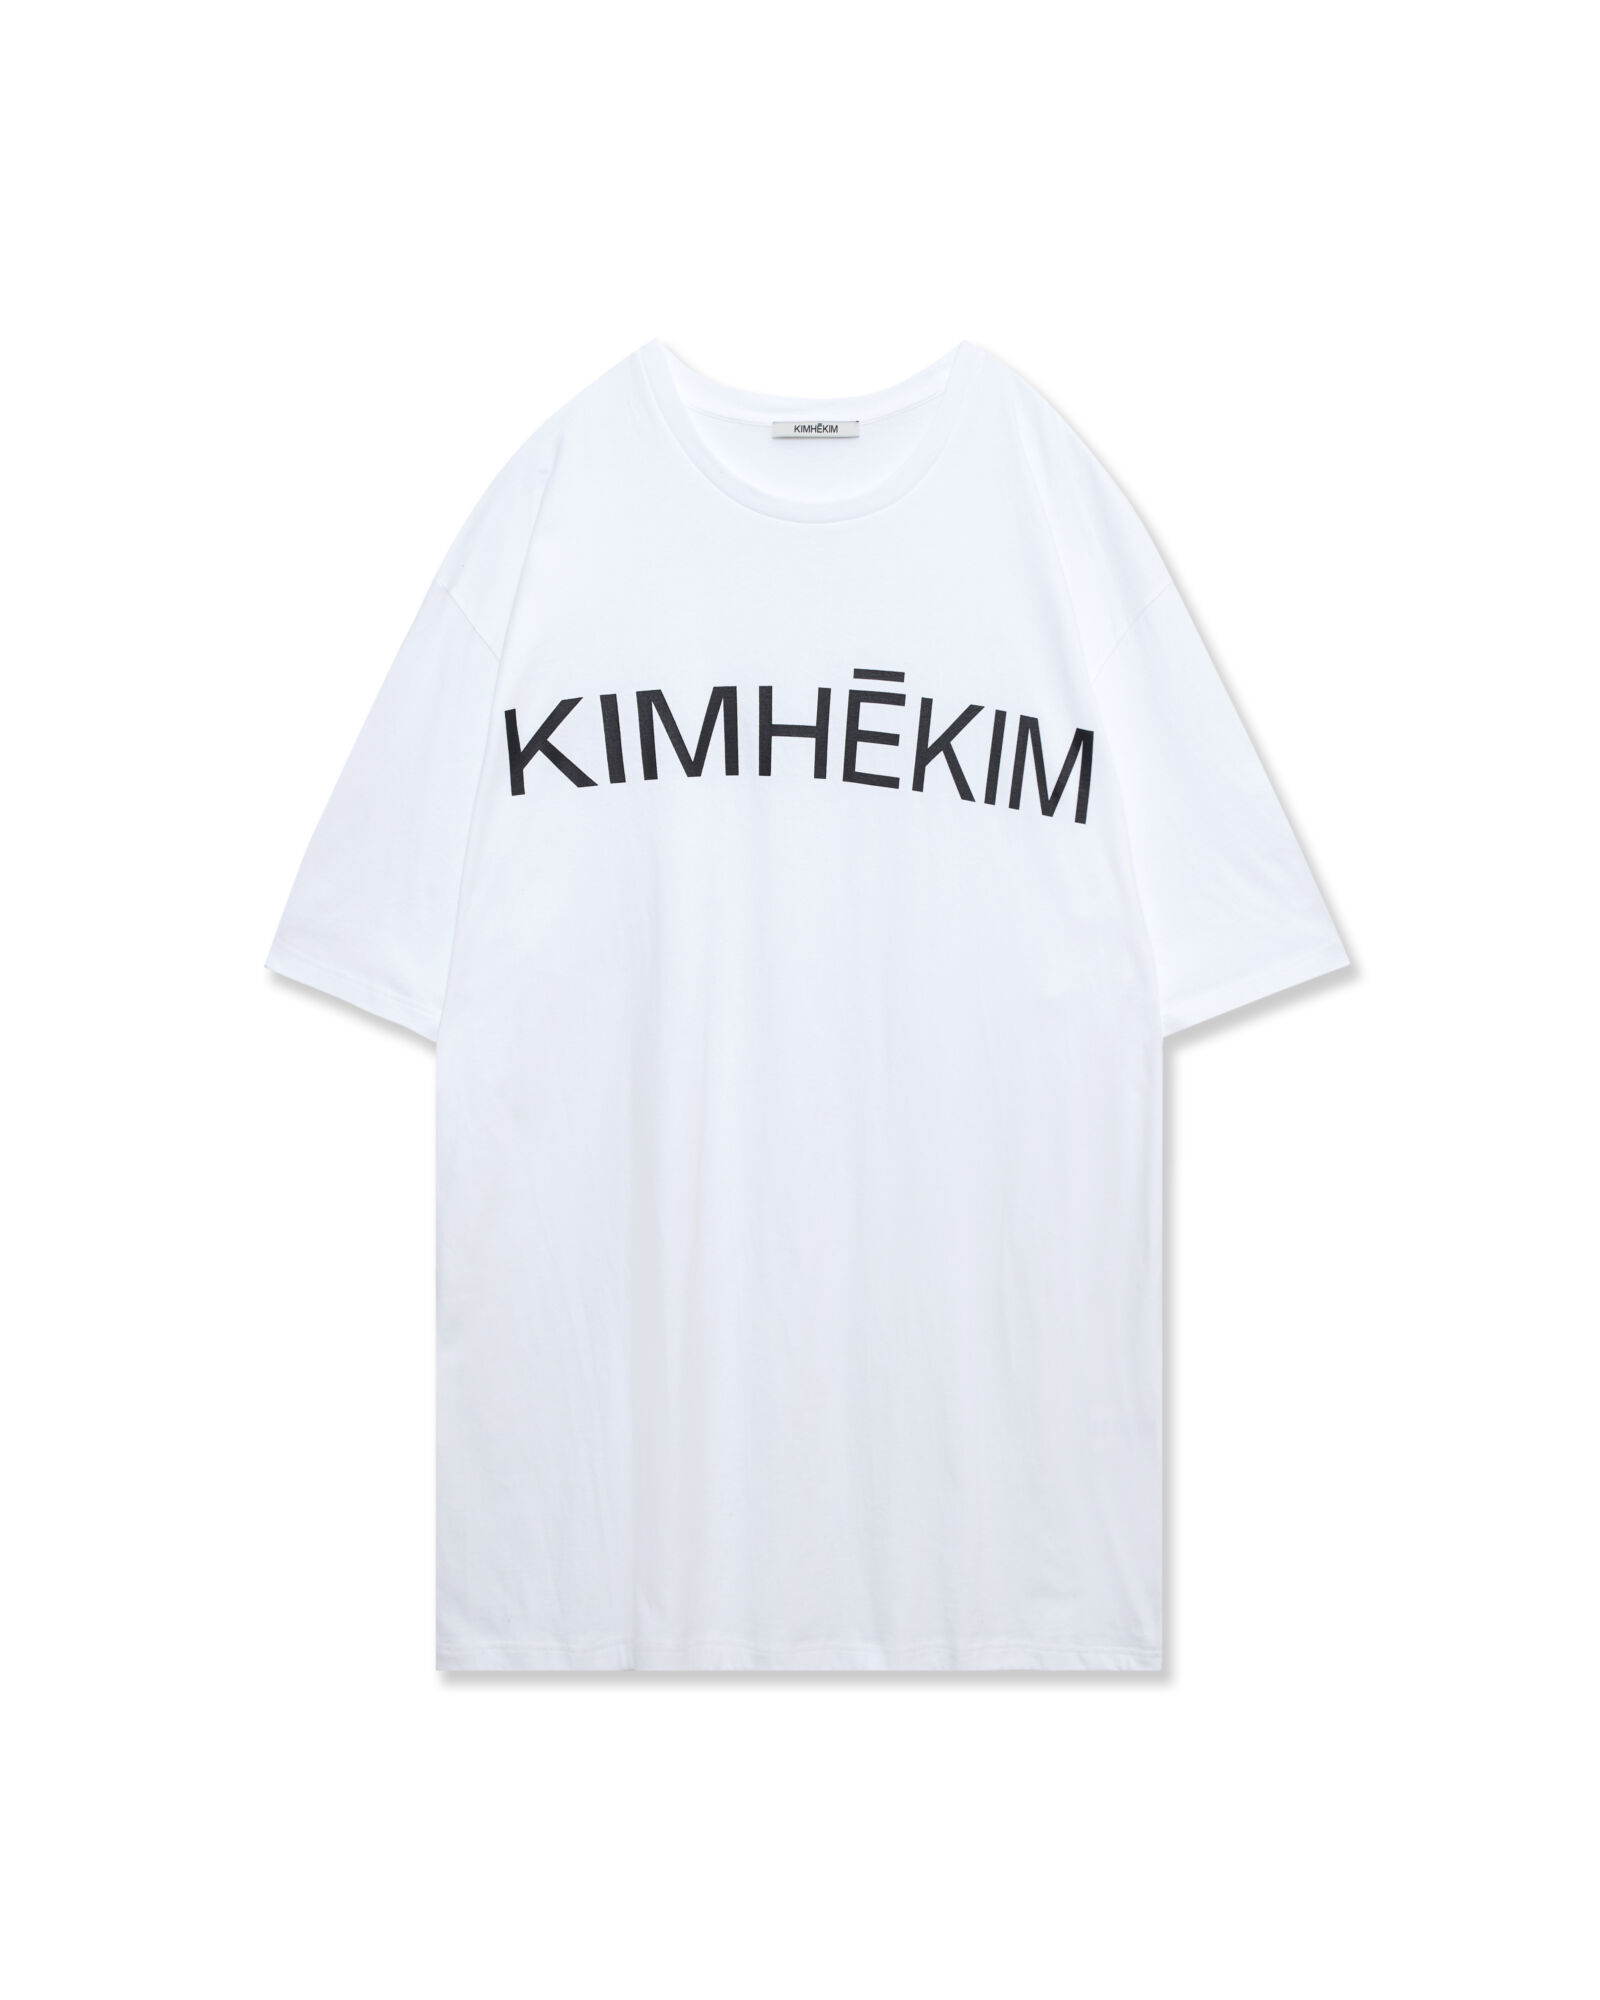 1.5 Kimhekim T-Shirt Dress (White) - Kimhekim